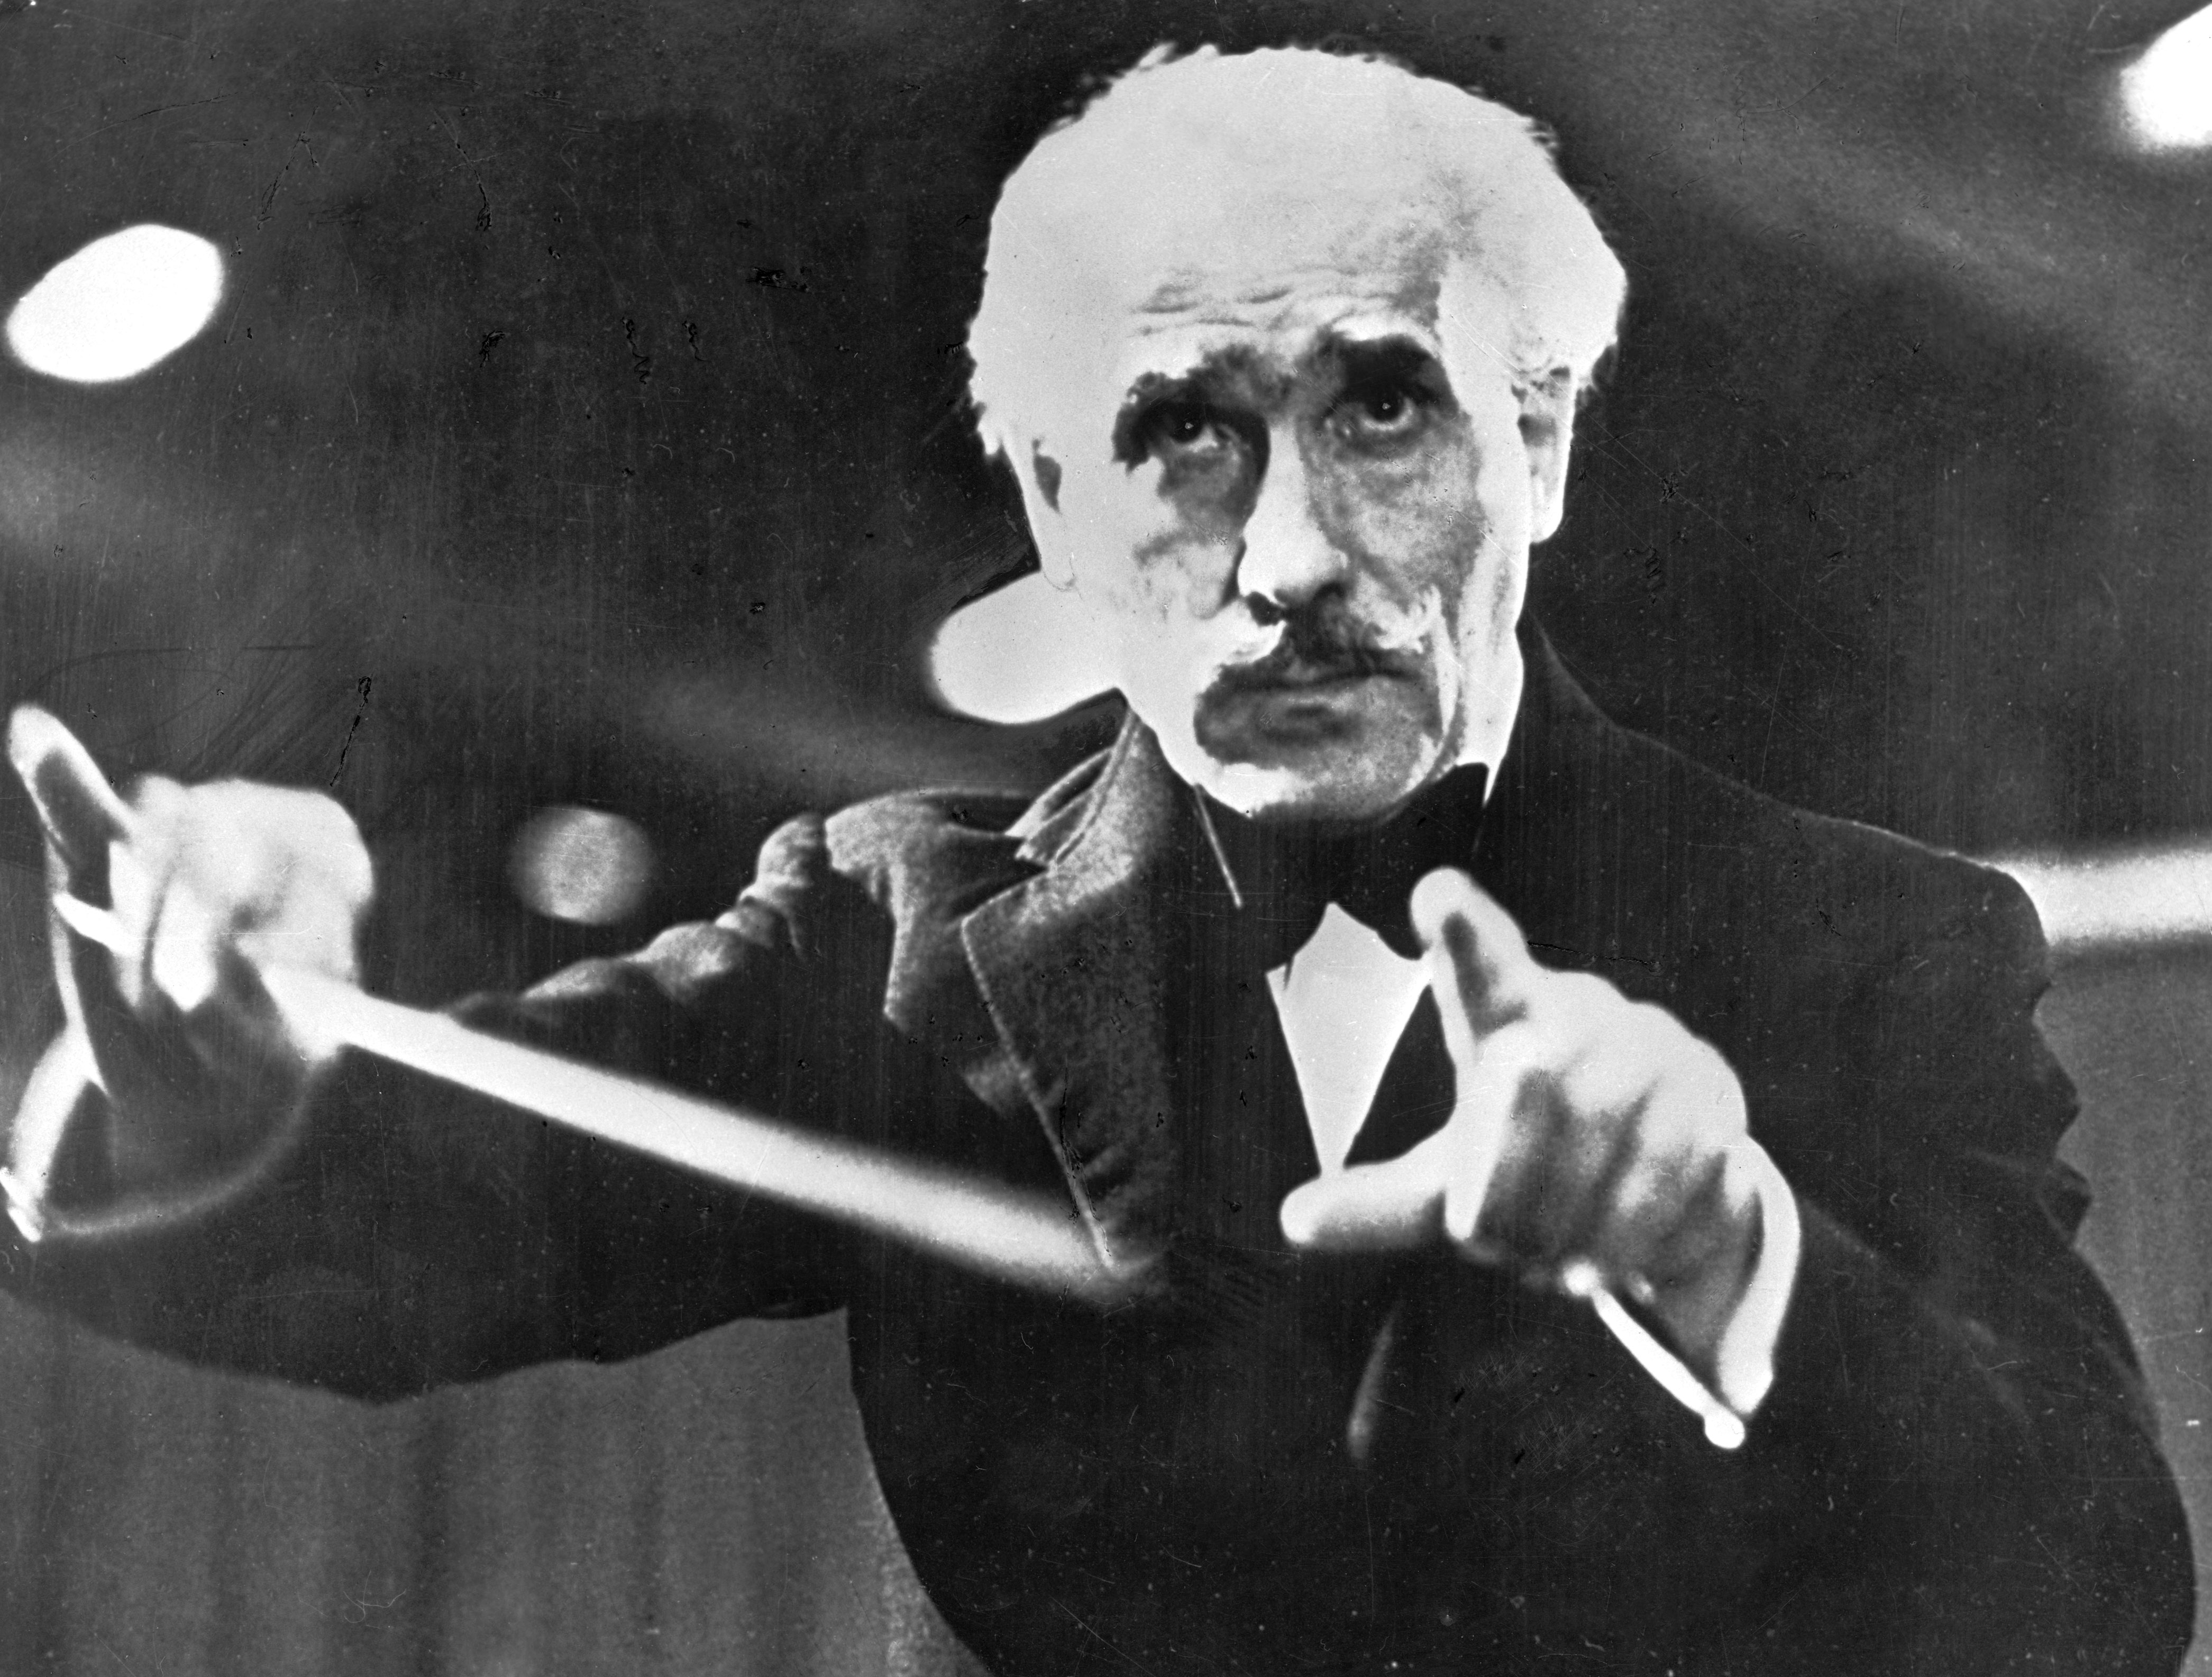 1944. Arturo Toscanini mentre dirige un’orchestra.